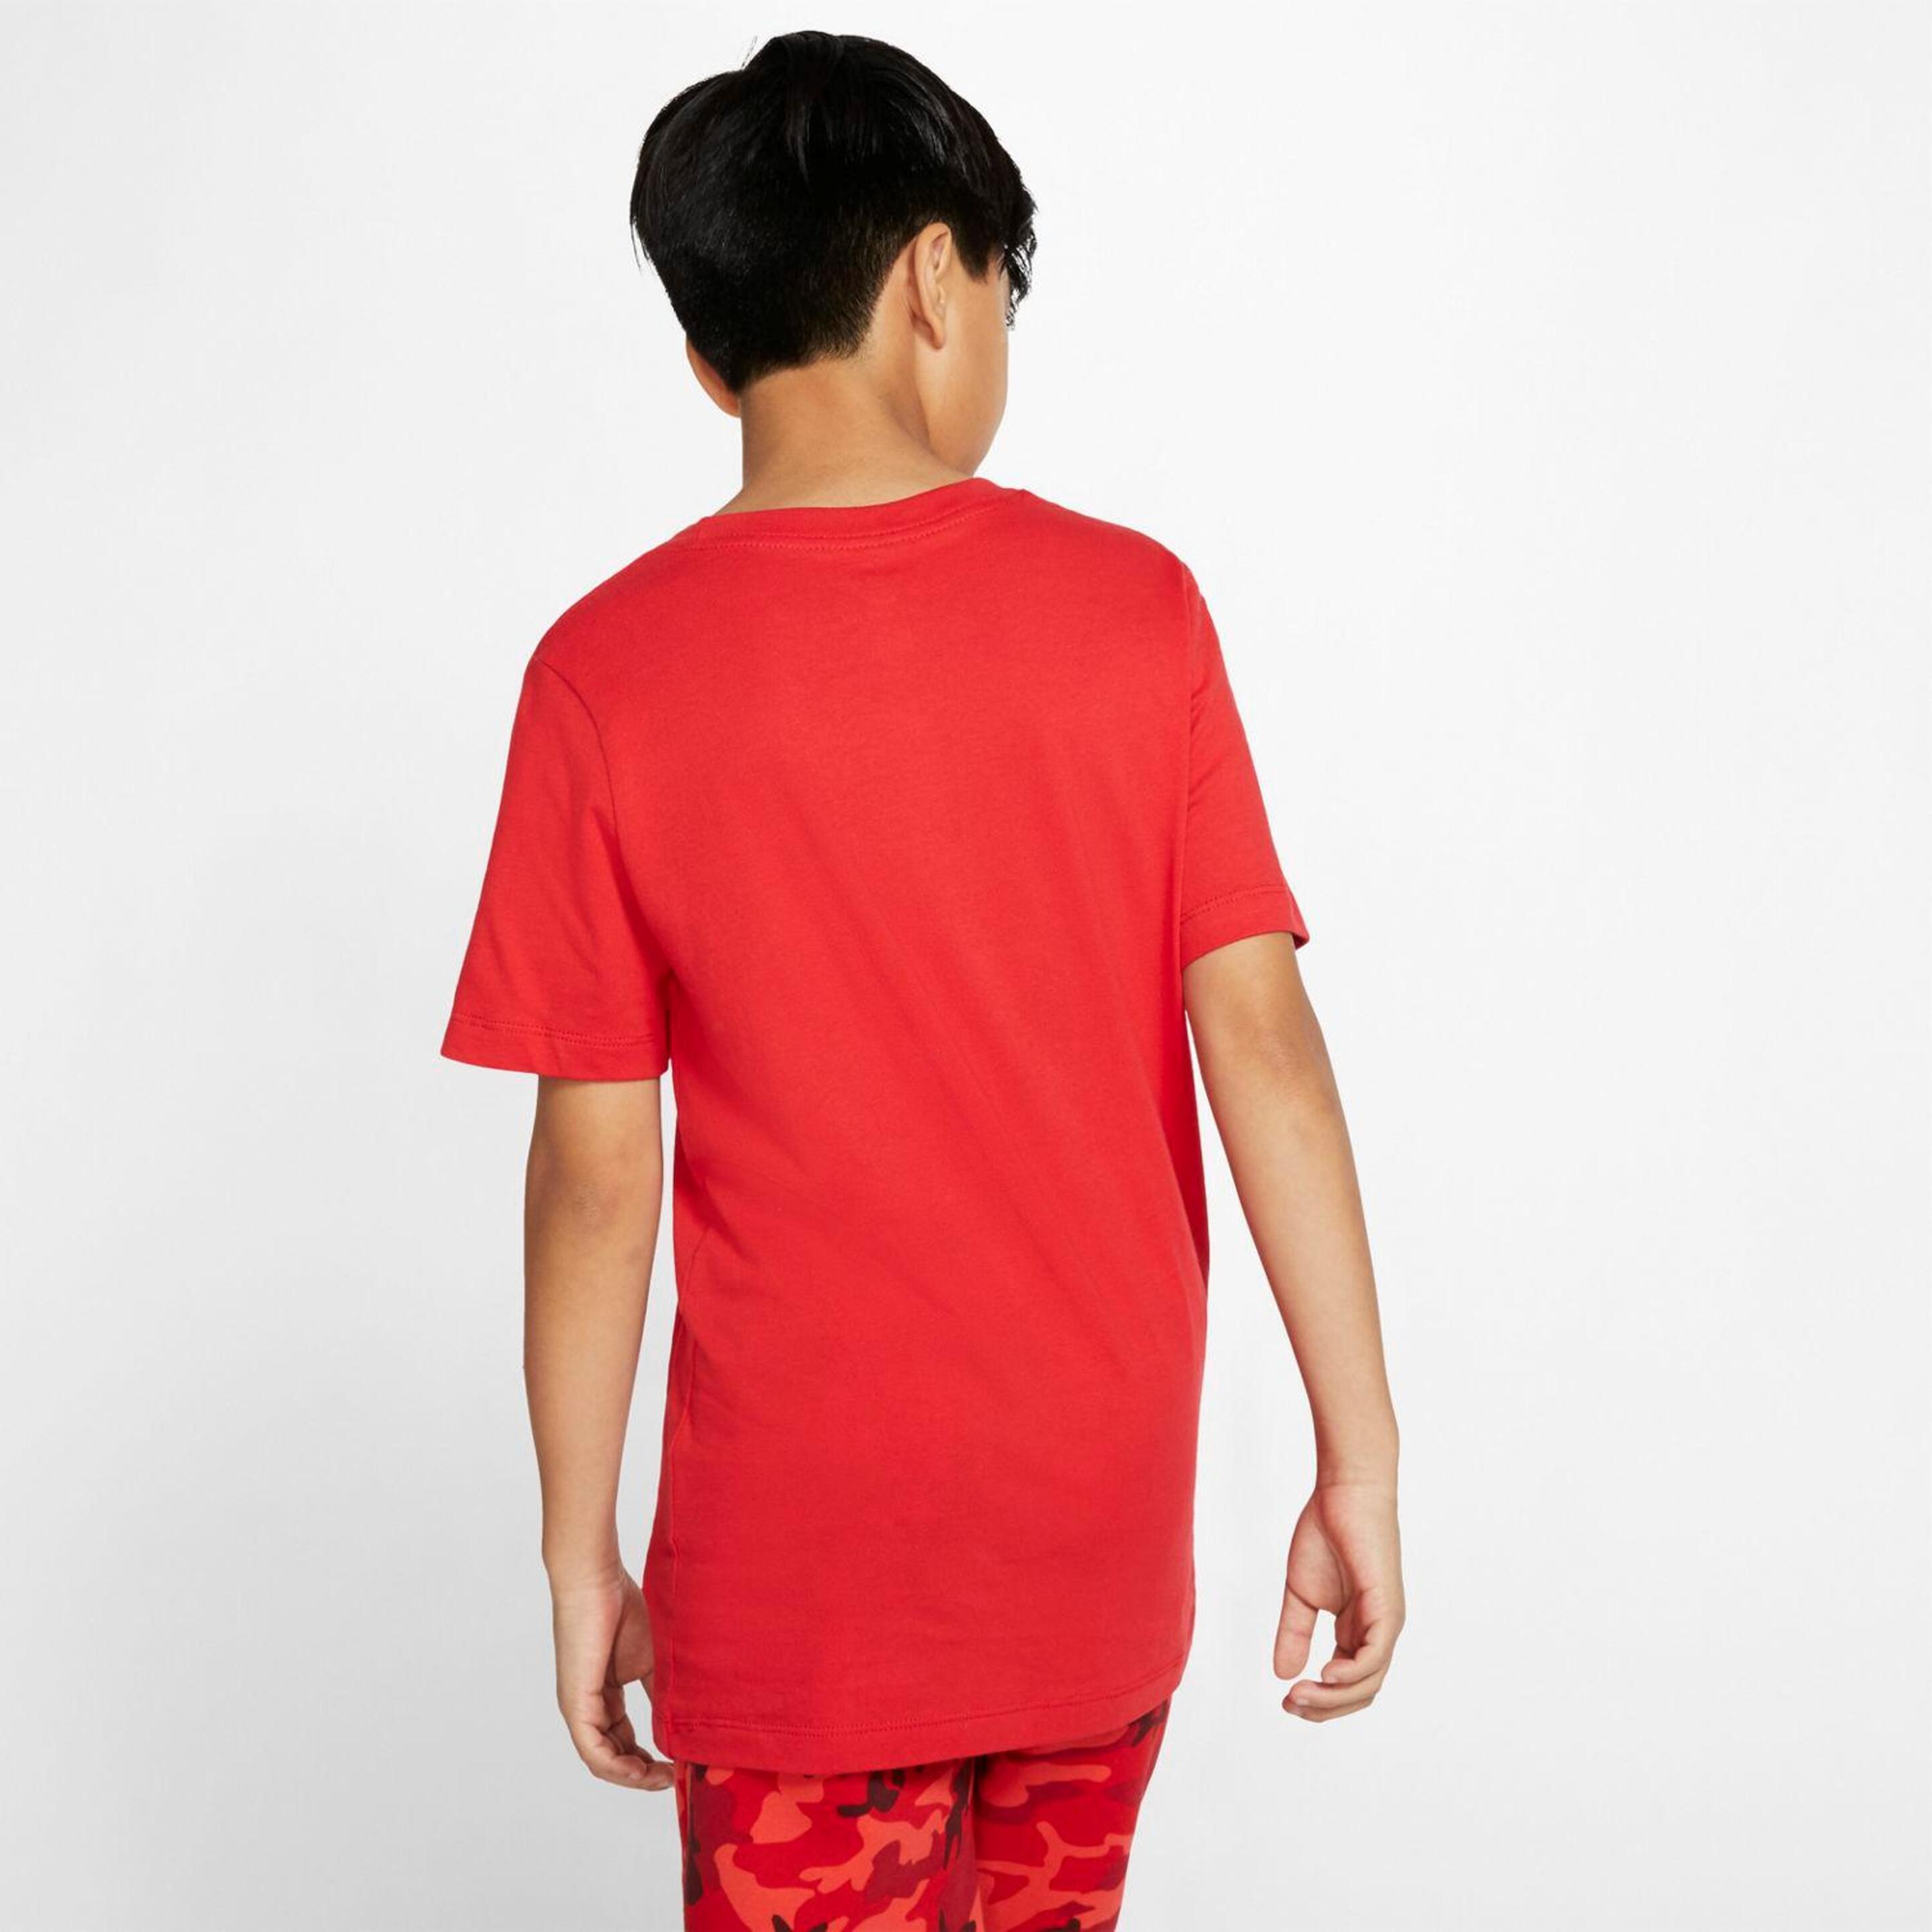 Nike Air - Rojo - Camiseta Chico